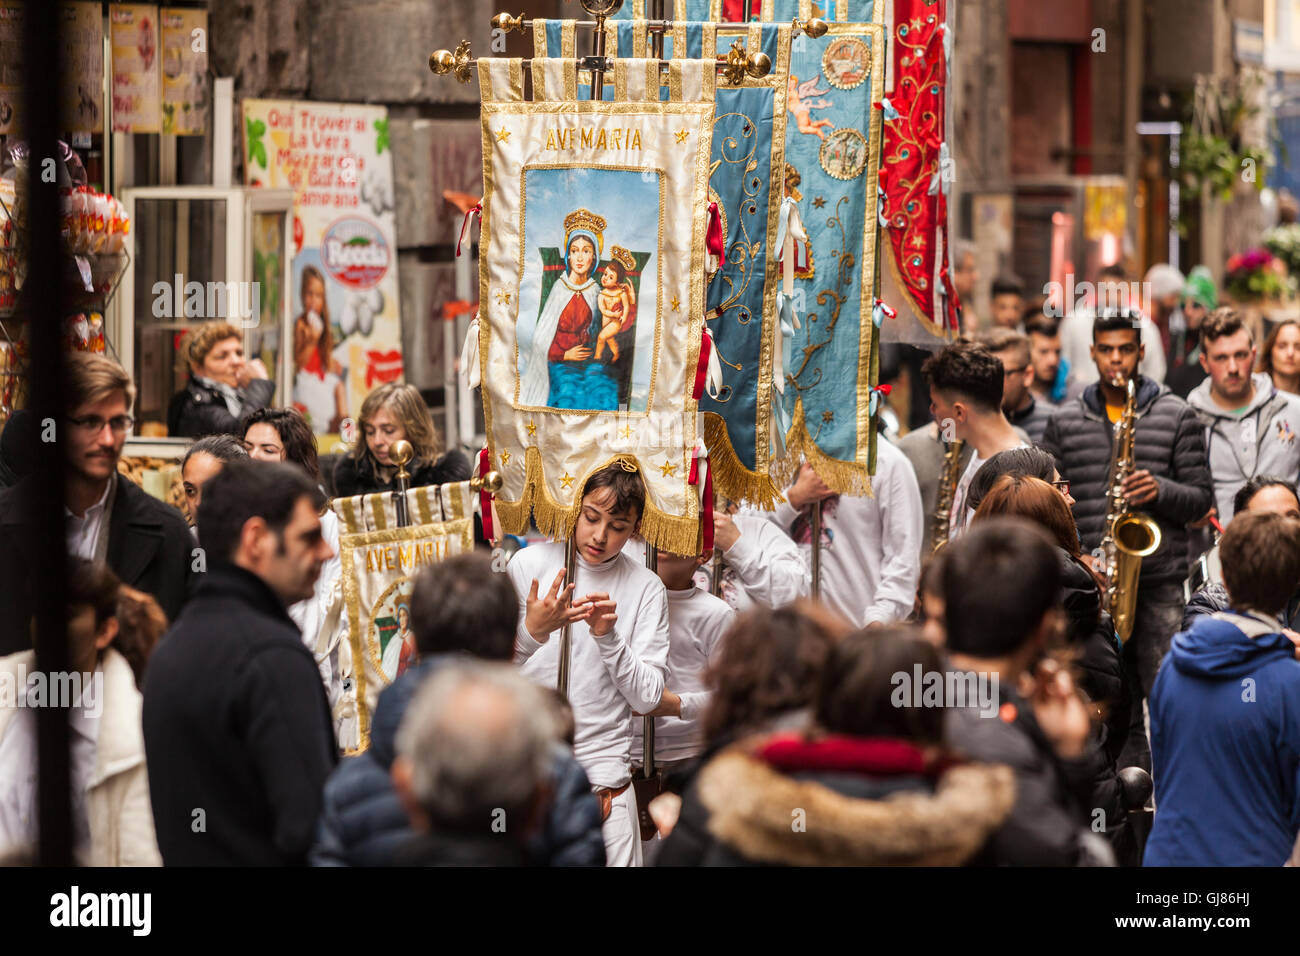 L'Italia, Napoli: processione religiosa in via dei Tribunali Foto Stock